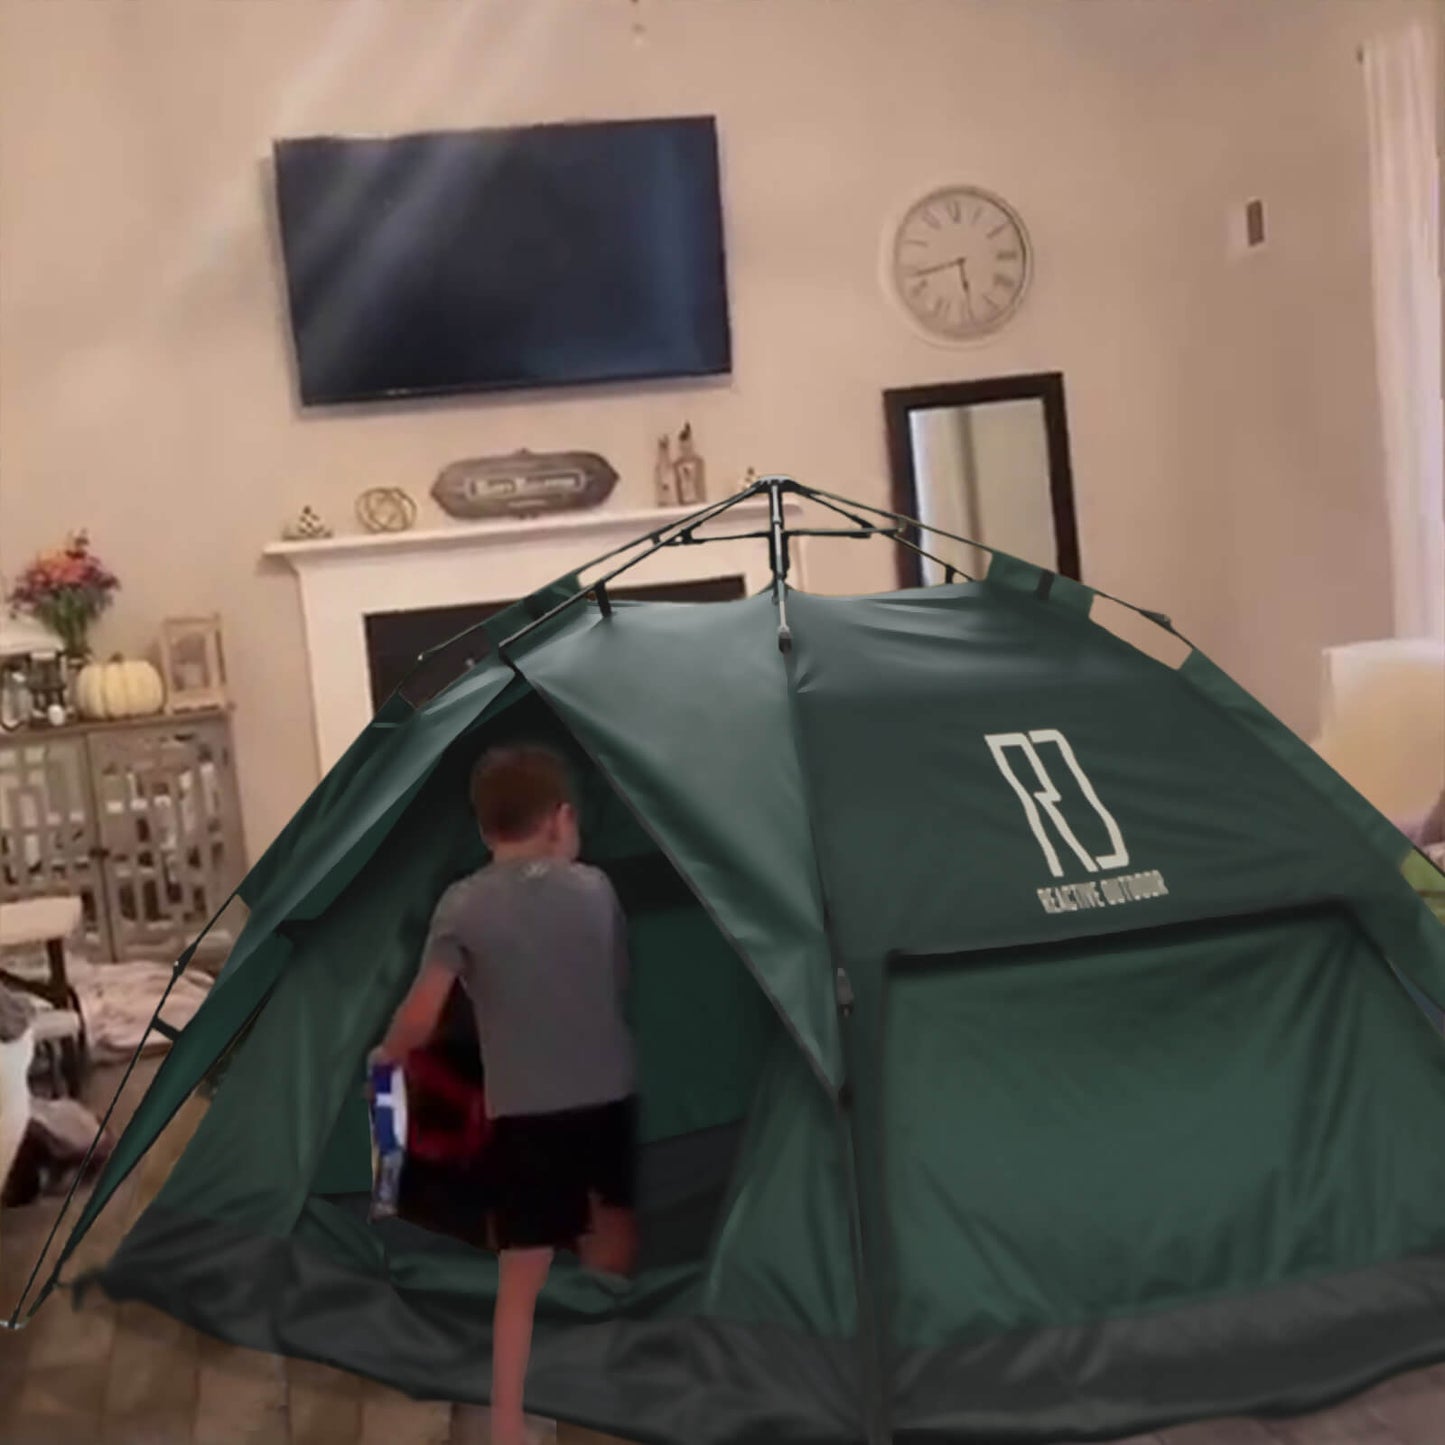 3 Secs Tent (Motocamping, DK)